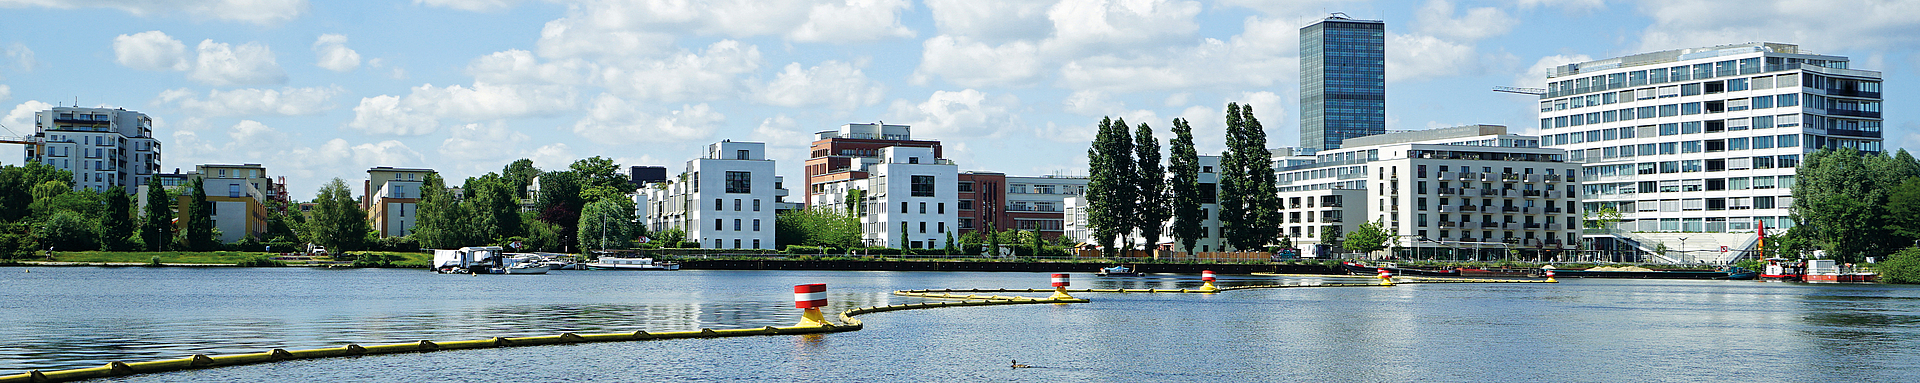 Panoramaansicht der Rummelsburger Sicht, im Vordergrund ist eine Abgrenzung im Wasser zu sehen.